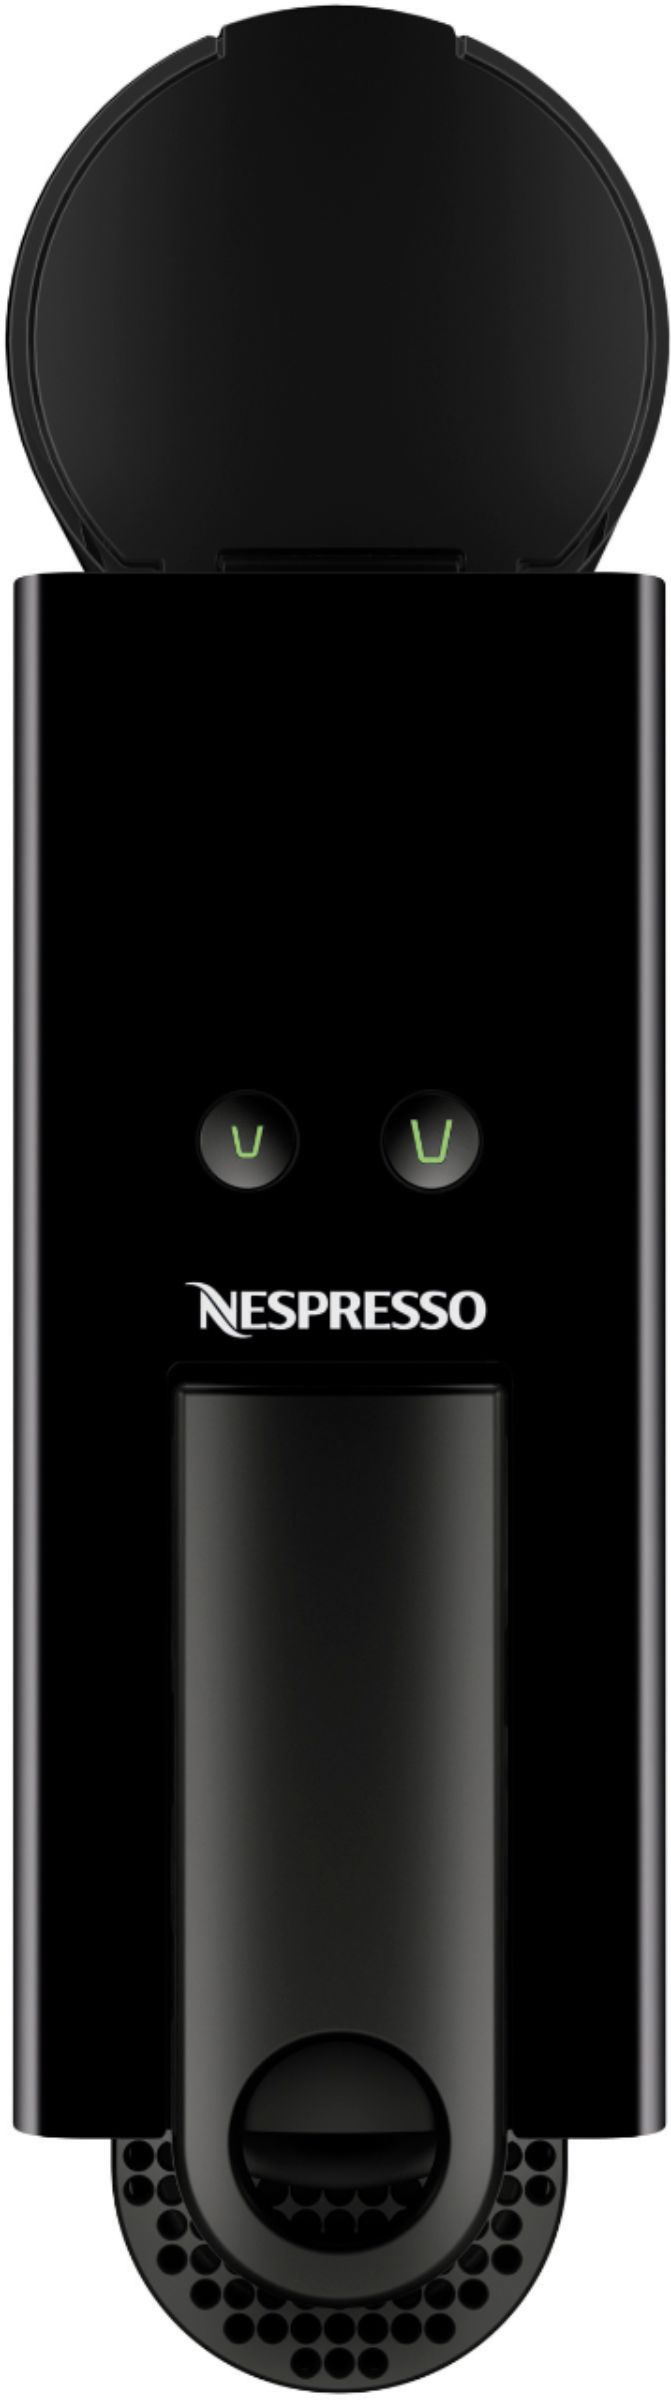 KA1 Cafetera Nespresso Modelo Essenza 1 Solo uso. Con caja original .  $85.000